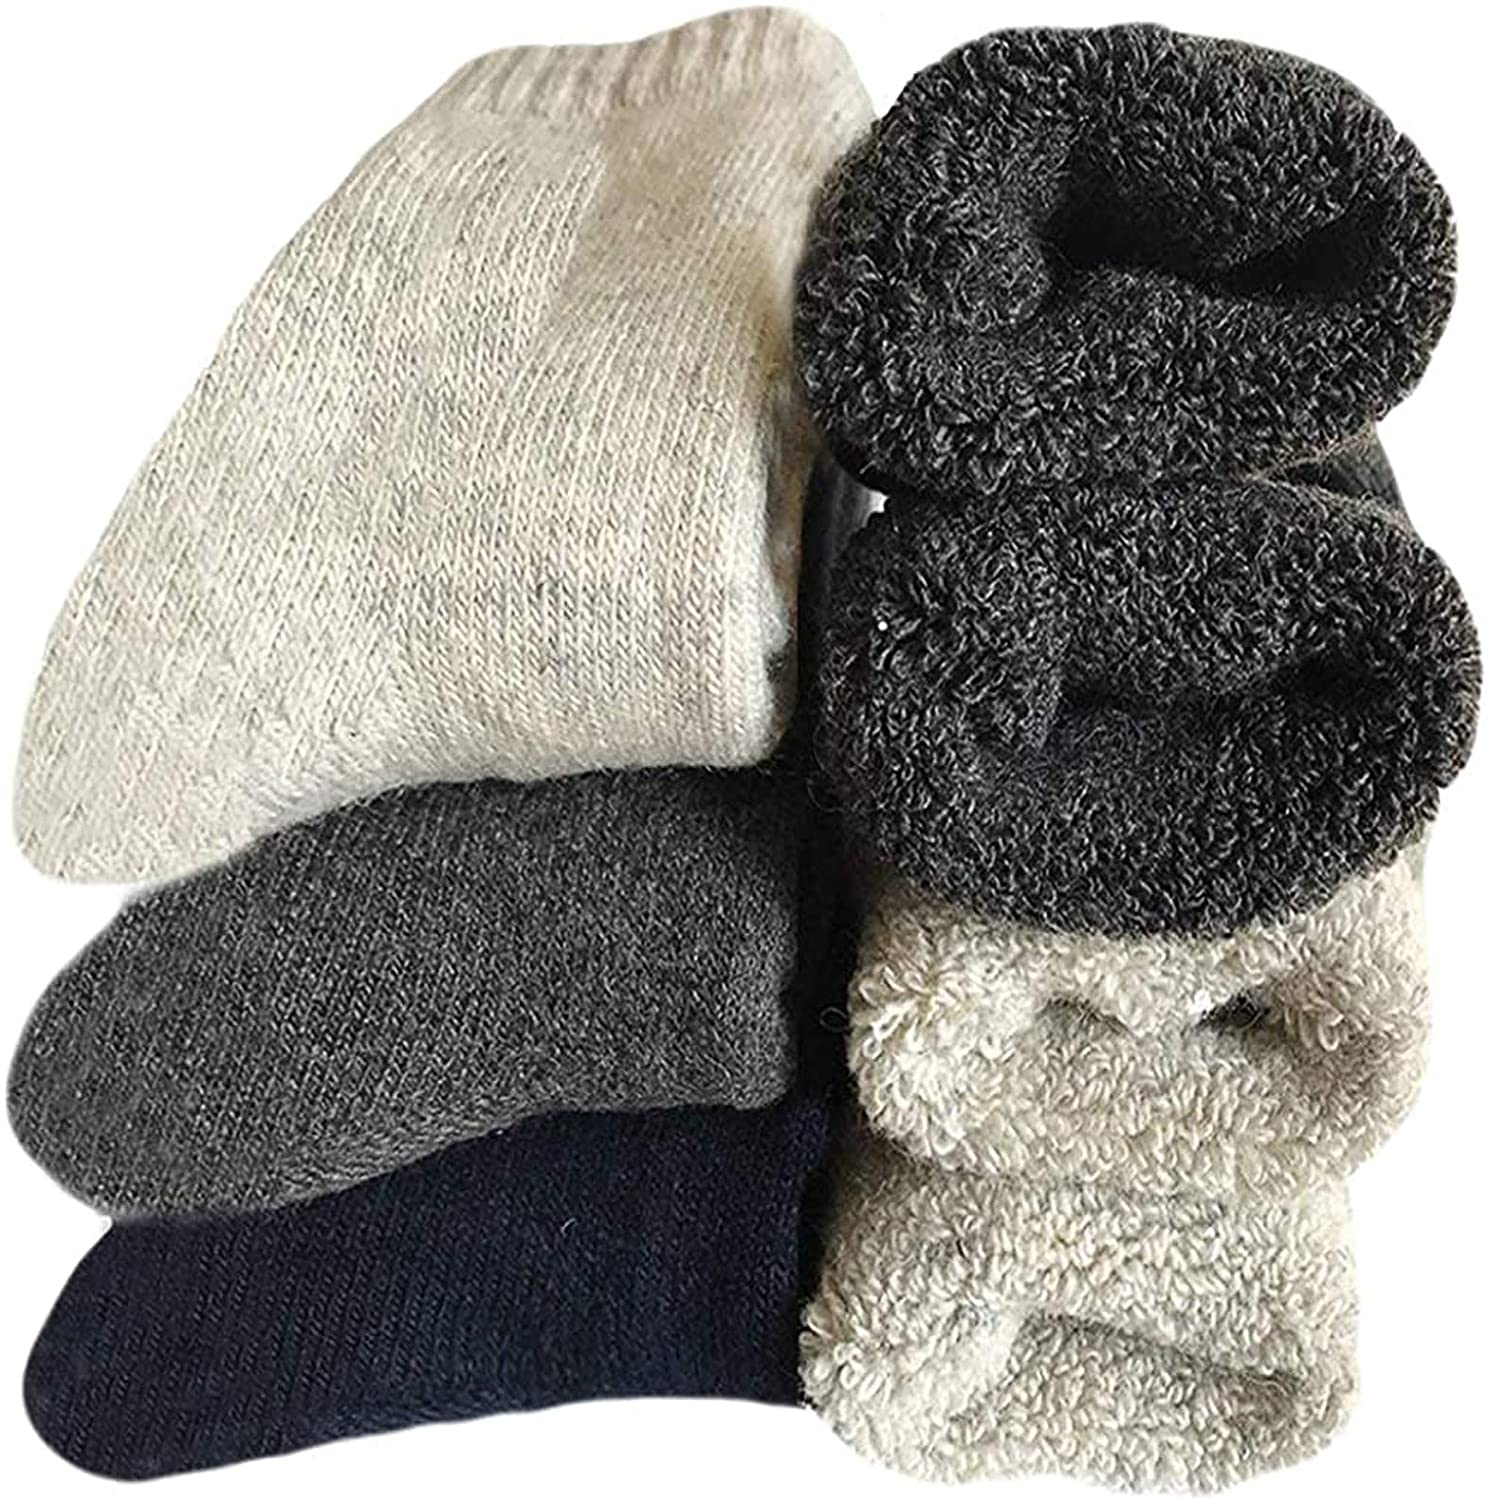 Winter Socks For Men